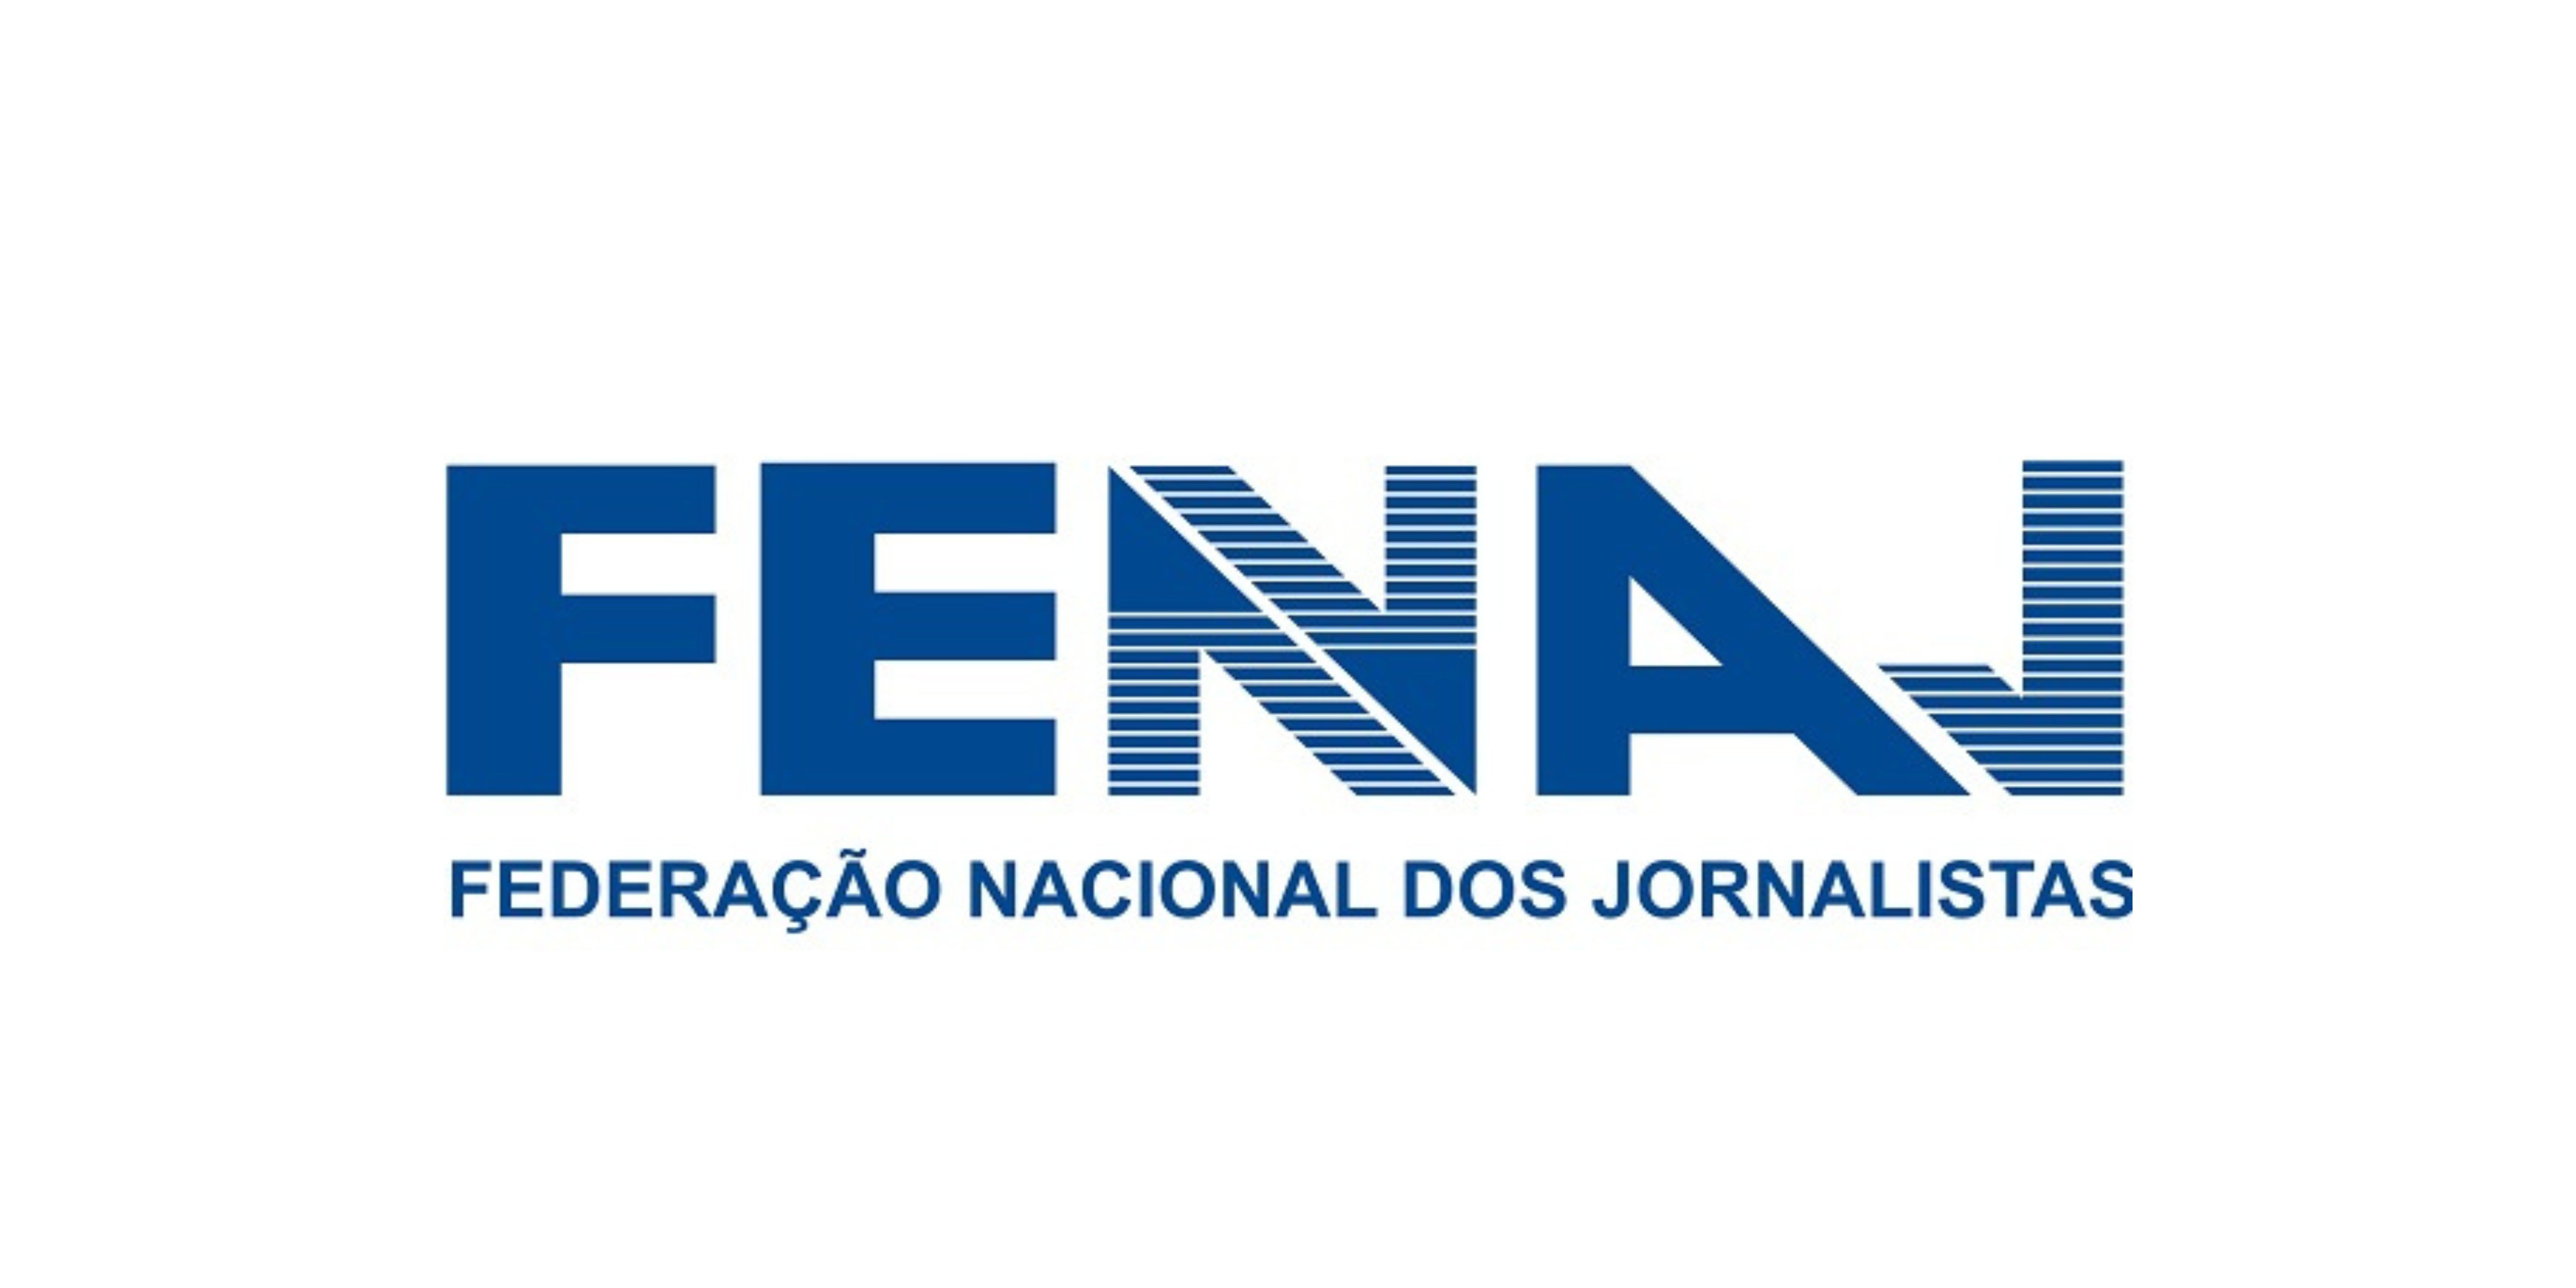 Brasil: La lista "Unidade na Luta" ganó las elecciones de la Federación Nacional de Periodistas con el 97,16% de los votos 